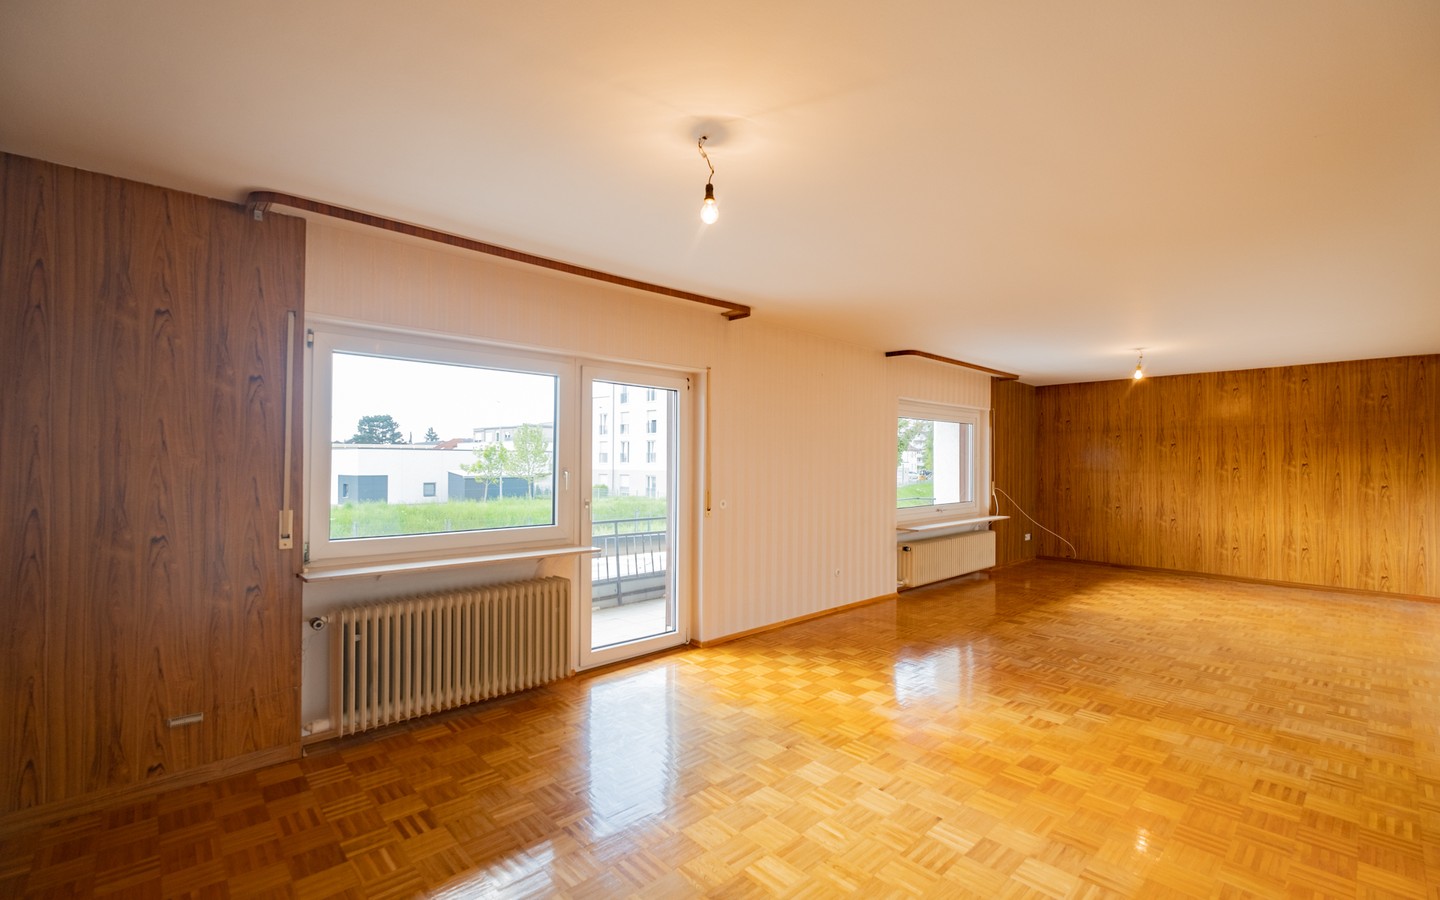 Zimmer zum Balkon - Leimen: freistehendes Haus in Splitlevelbauweise, mit 2 Garagen, 2 Stellplätzen und Garten